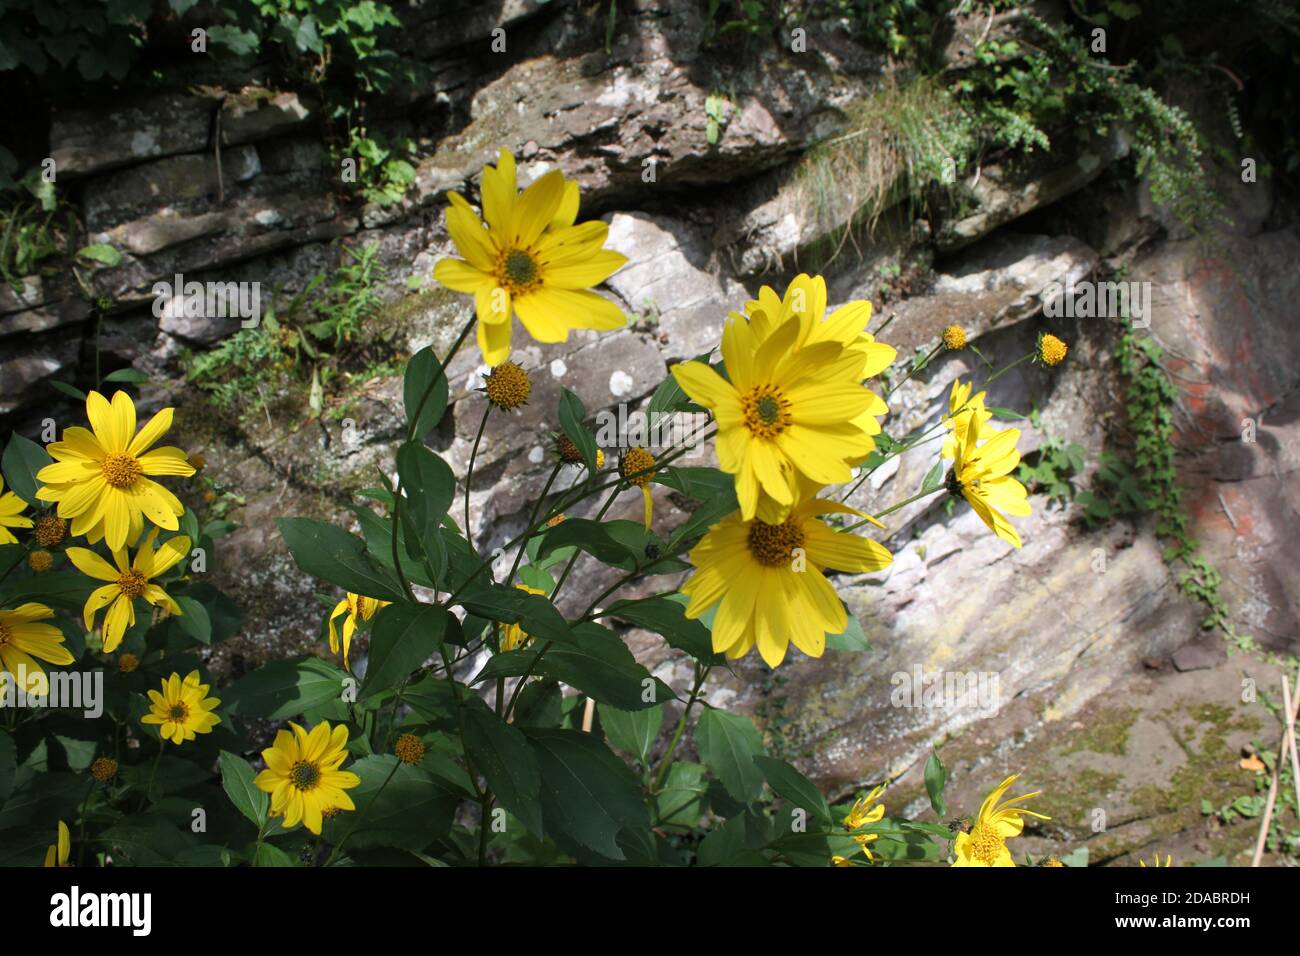 Fiori gialli luminosi posizionati contro le pareti di pietra. Piante gialle usate come bordi. Lavoro soleggiato o relax nella natura. Parchi pubblici, Regno Unito. Foto Stock